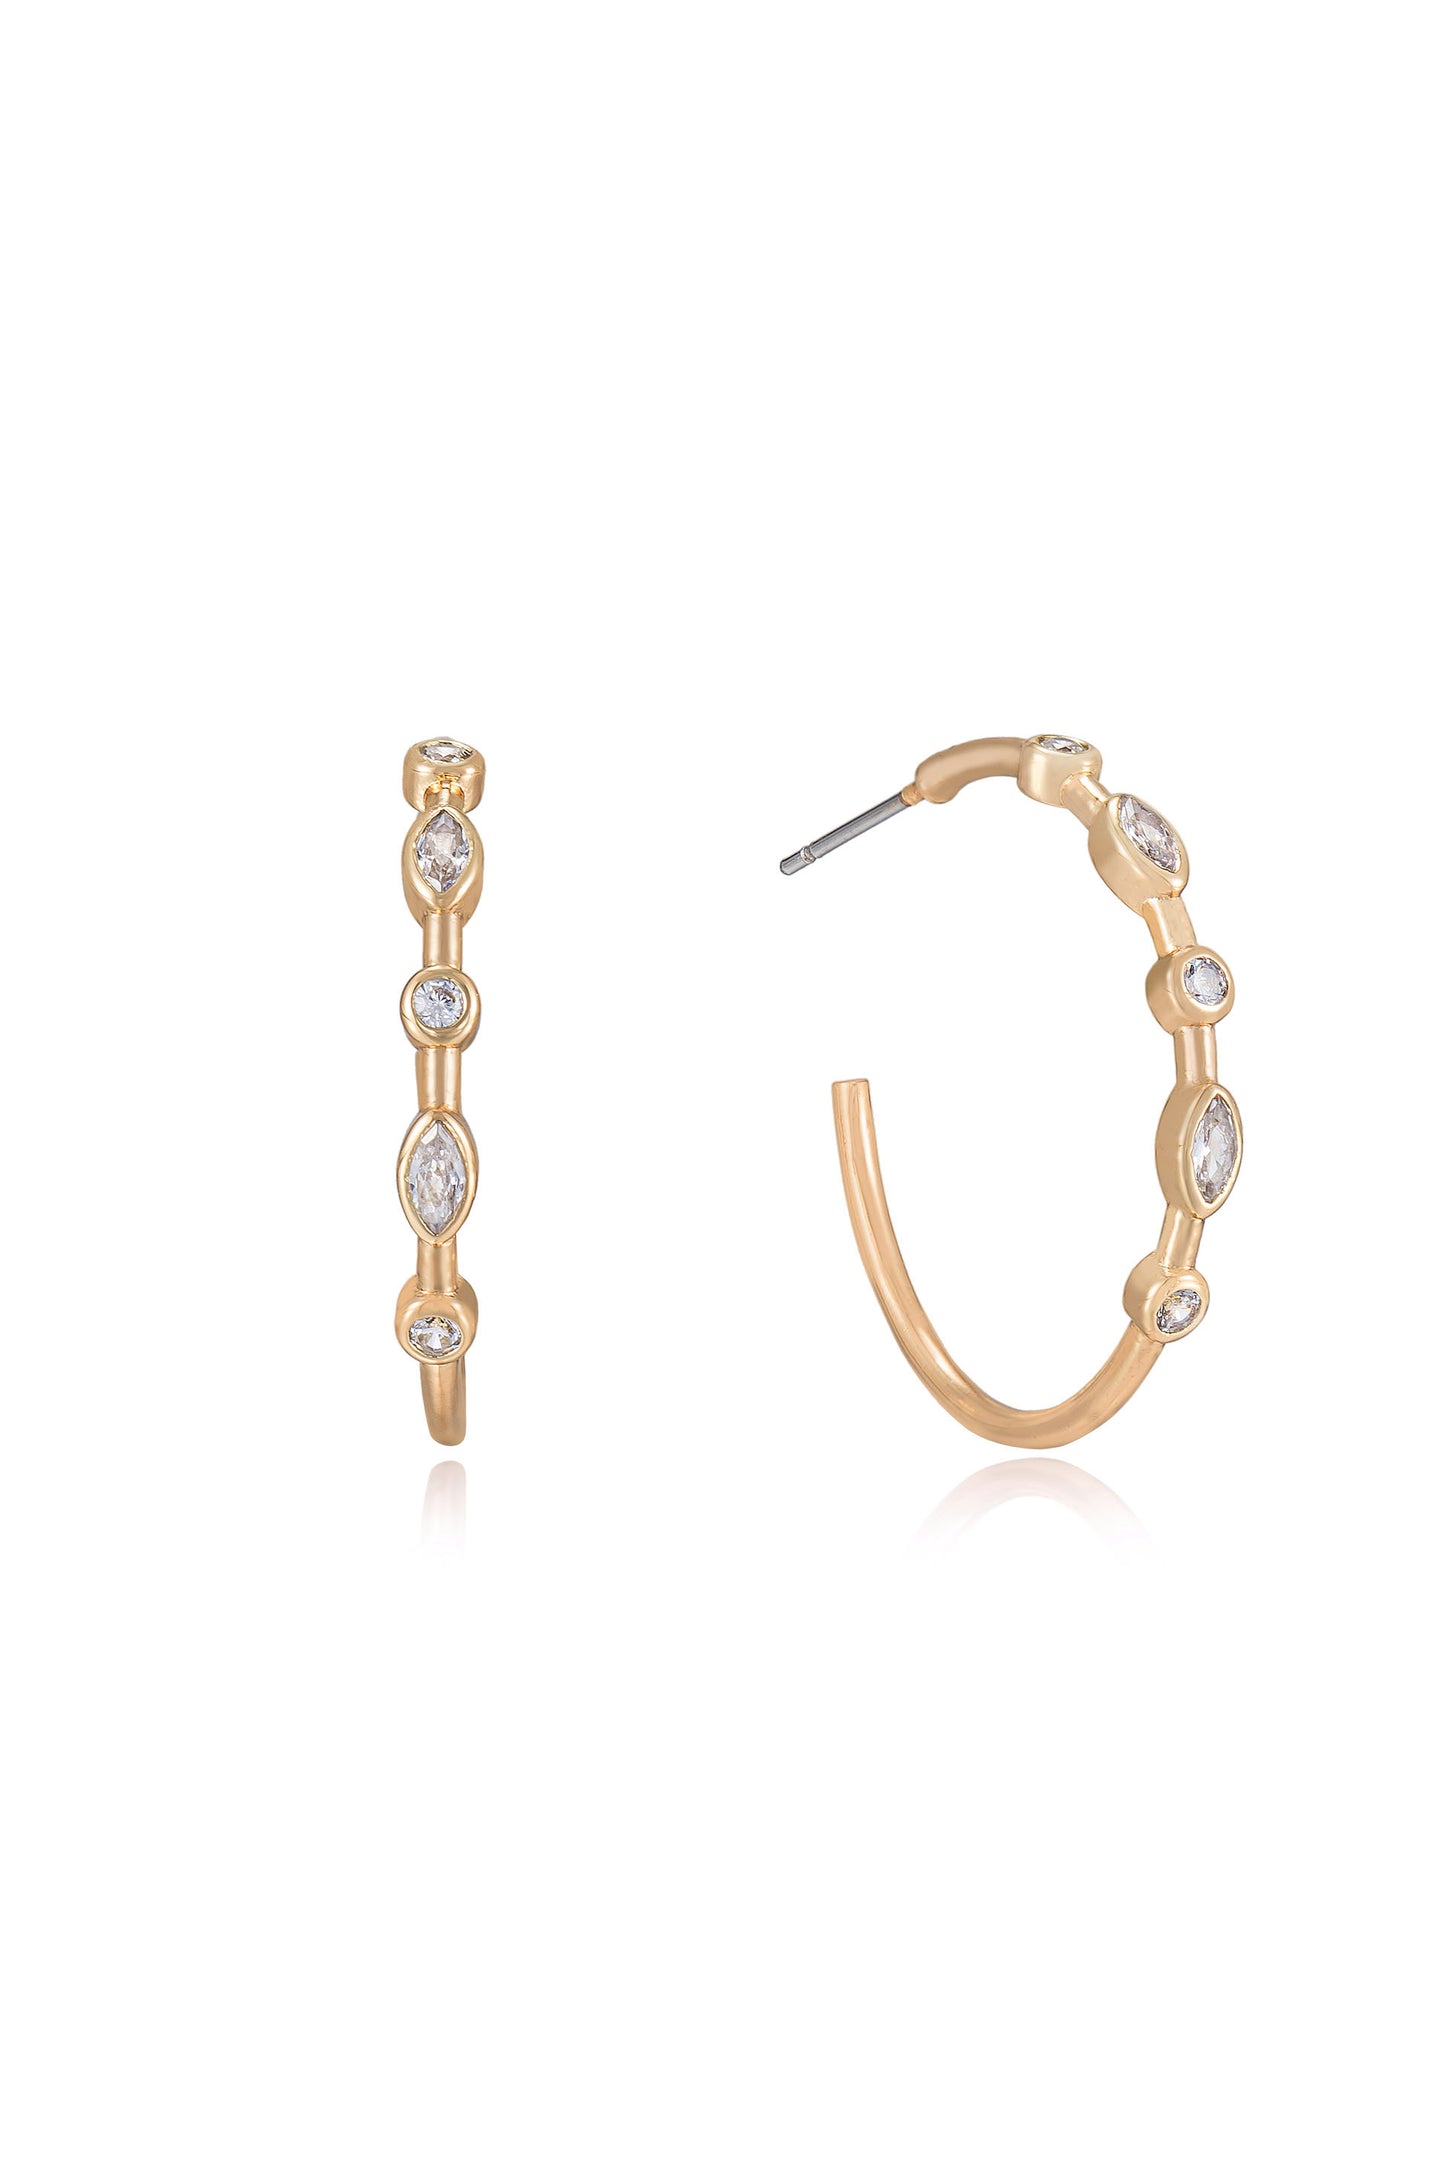 Crystal Queen 18k Gold Plated Hoop Earrings